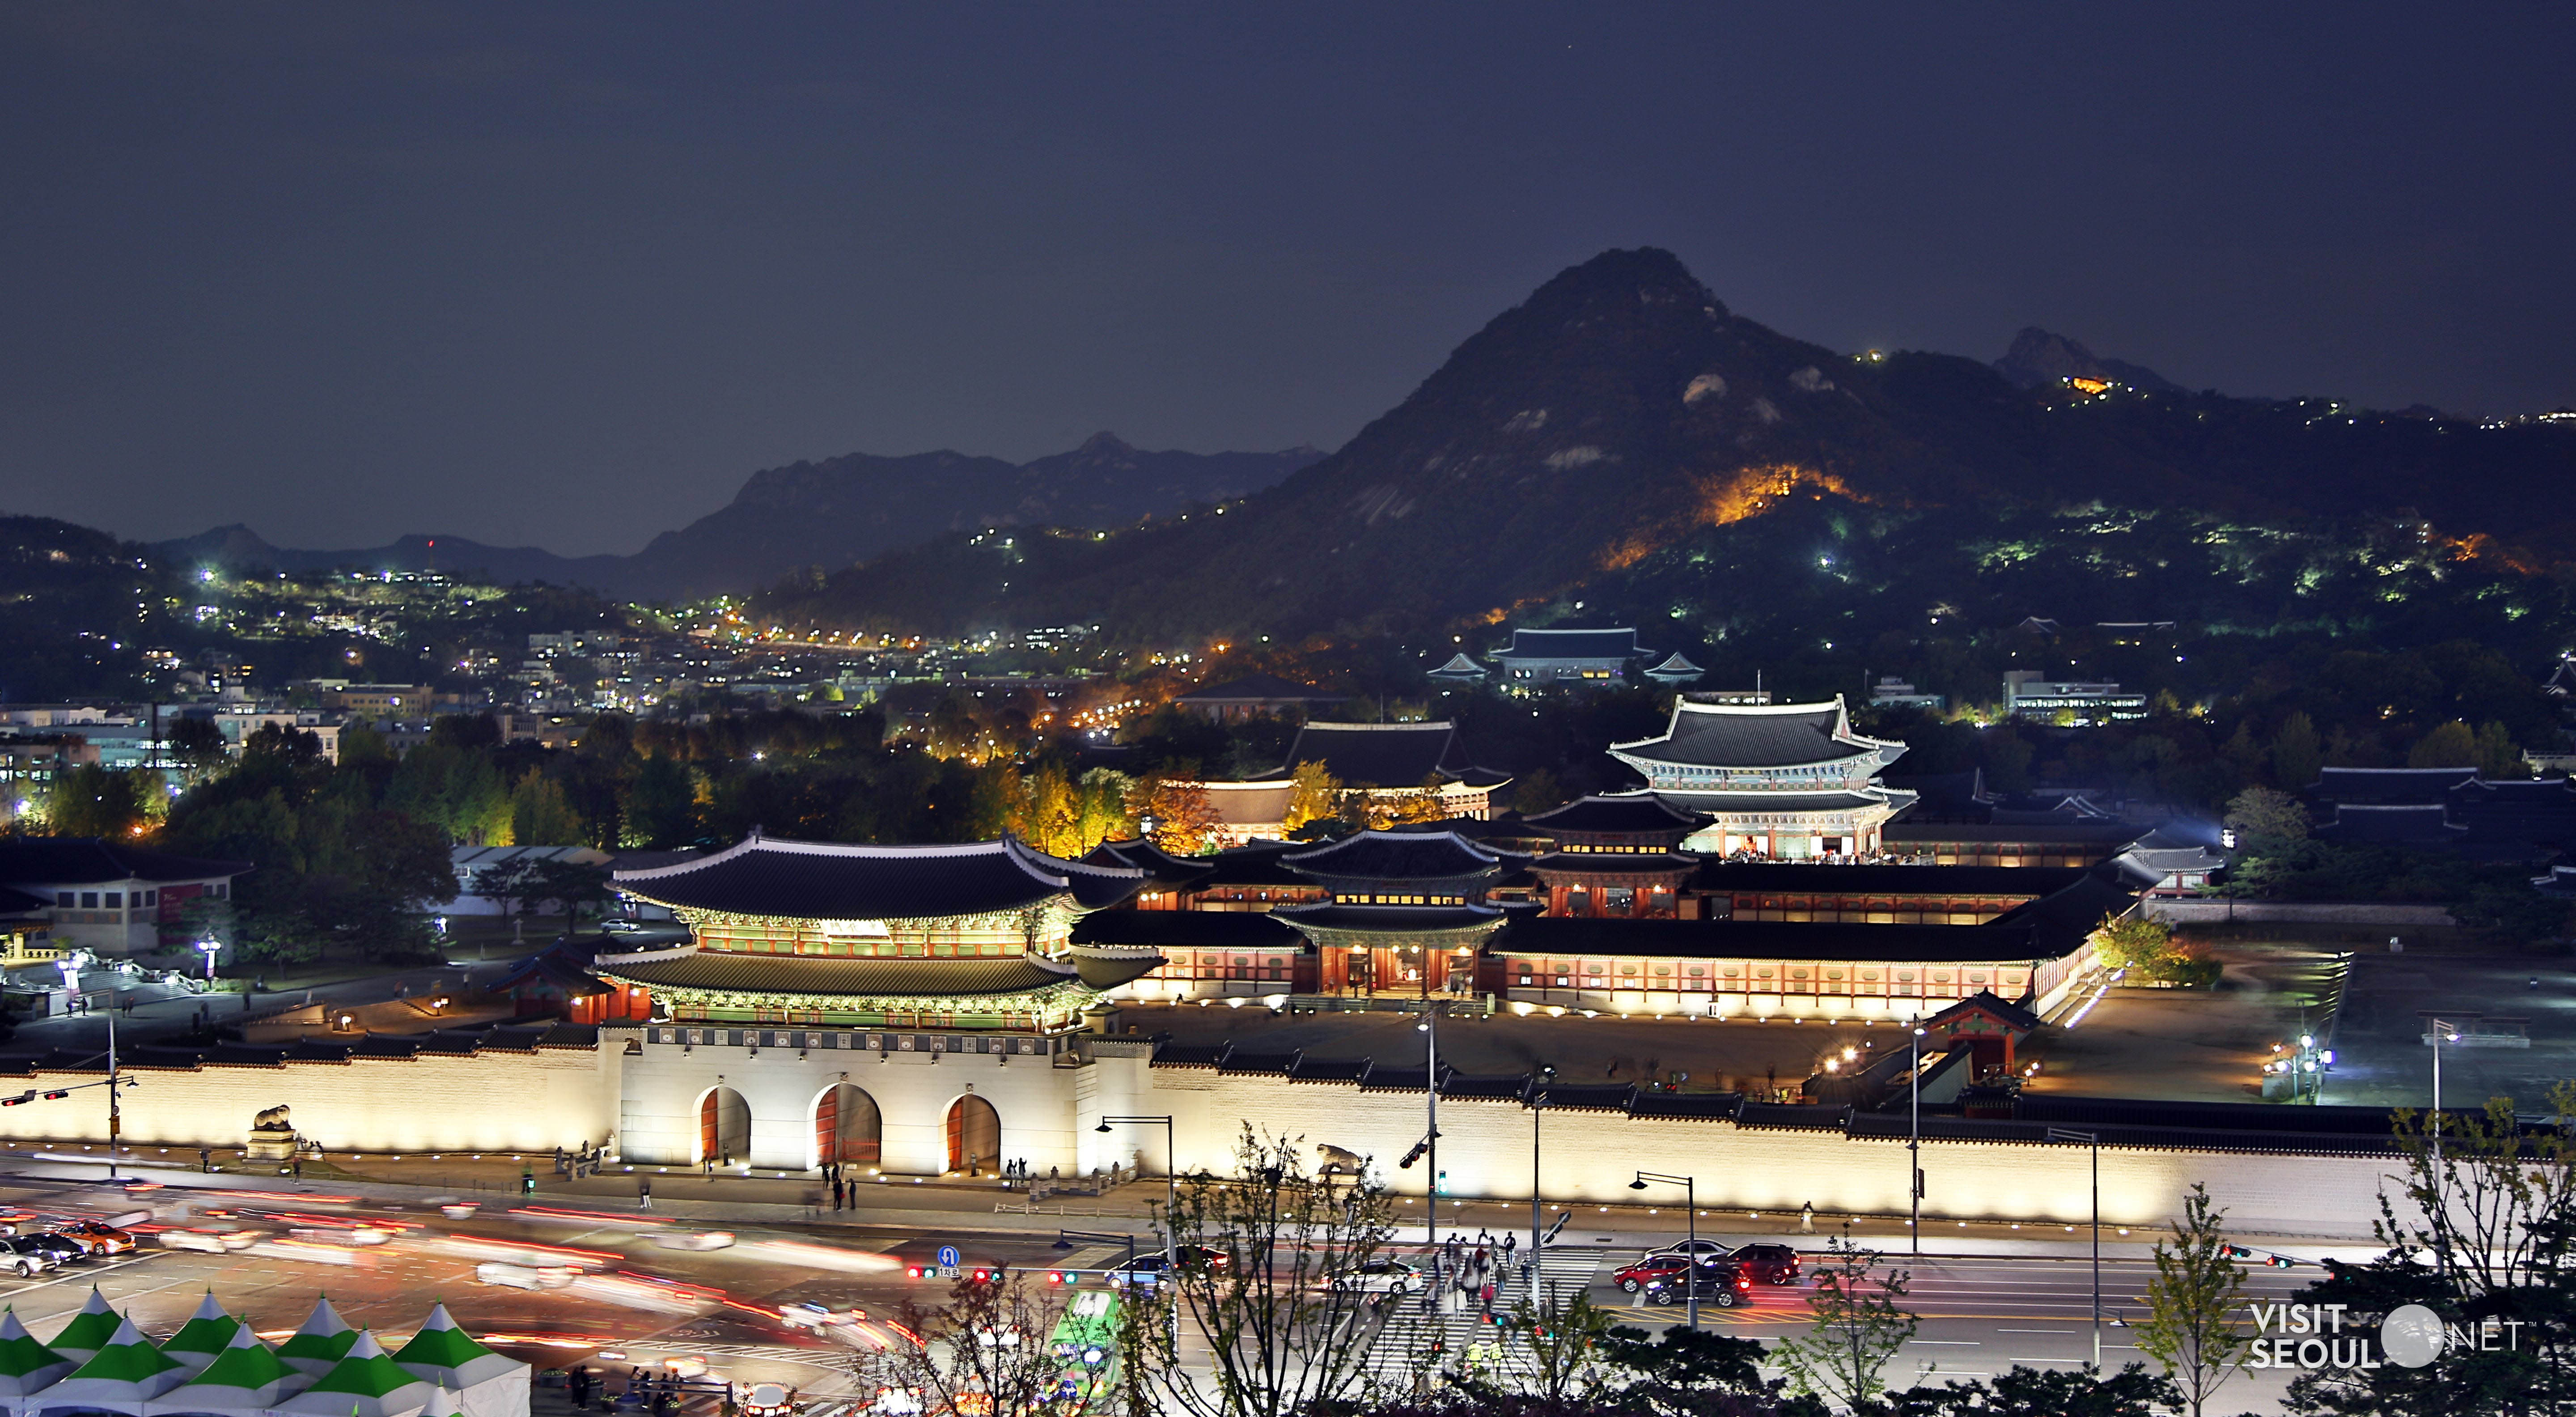 Gyeongbokgung Palace4 : Panoramic view of Gyeongbokgung Palace at night seen far away 